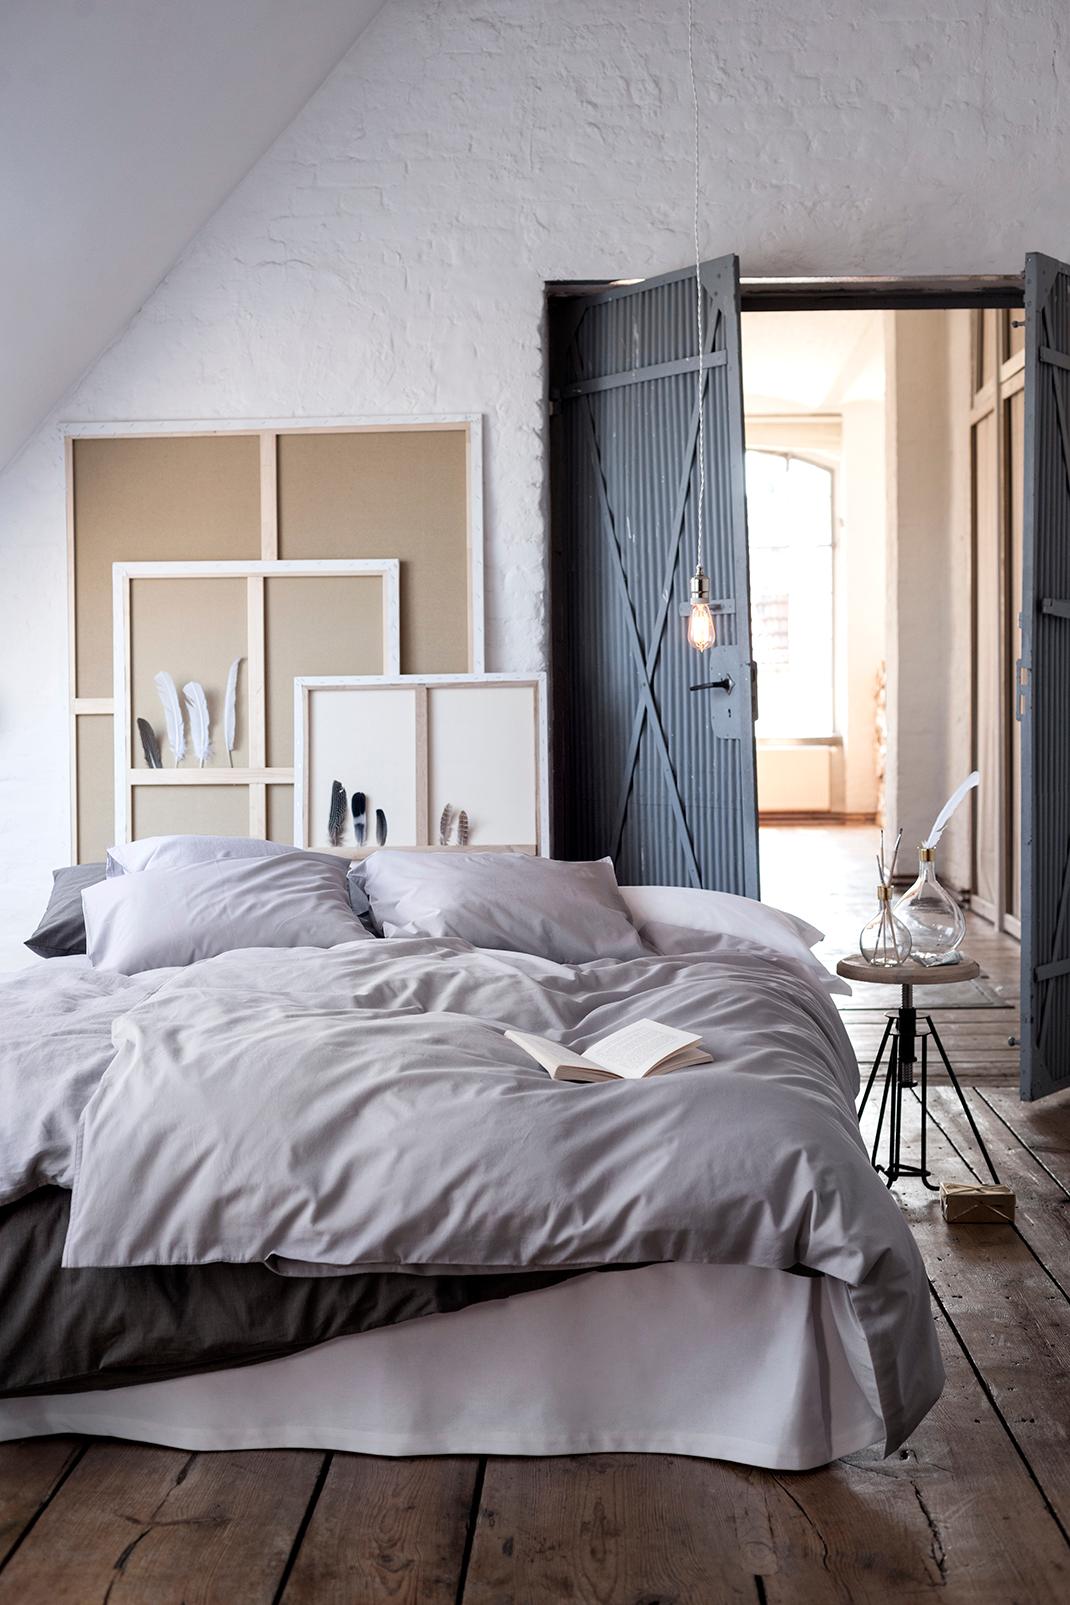 Schlafzimmer in renoviertem Bauernhaus #beistelltisch #bett #dielenboden #hocker #vase #bettwäsche #flügeltür #nachttisch #bilder #feder #bauernhaus ©H&M Home